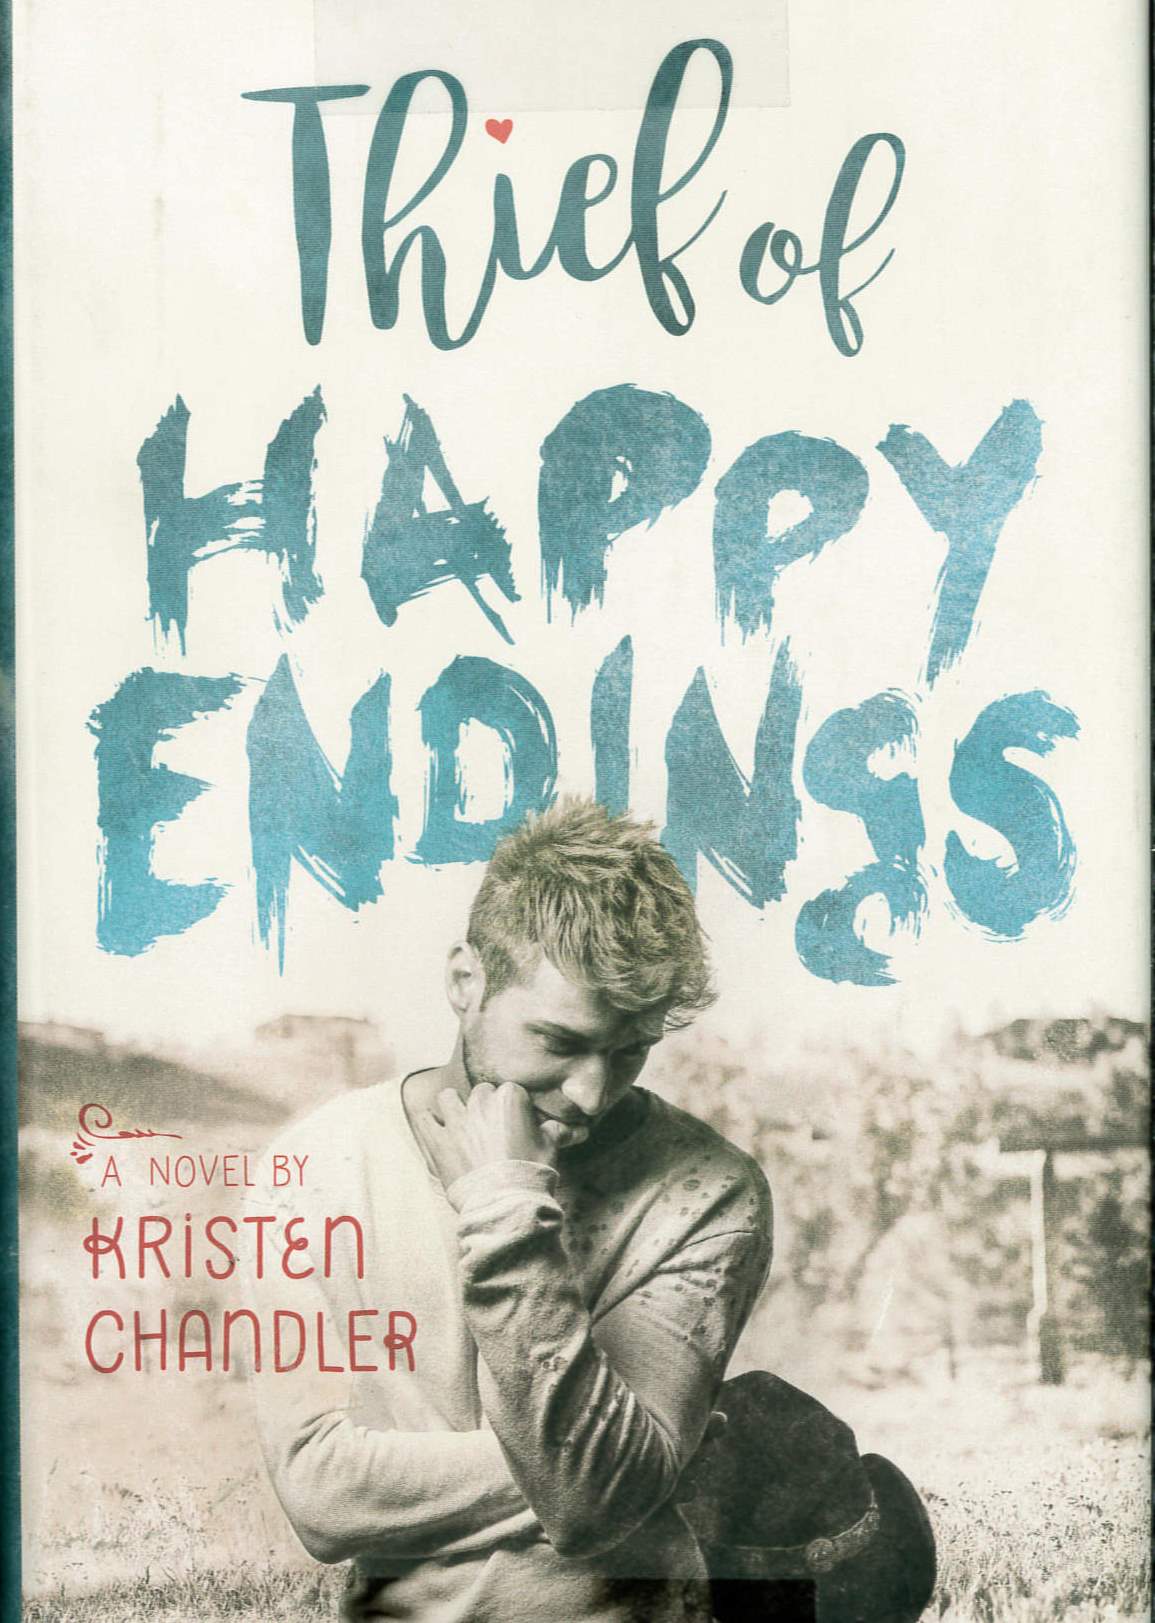 Thief of happy endings /